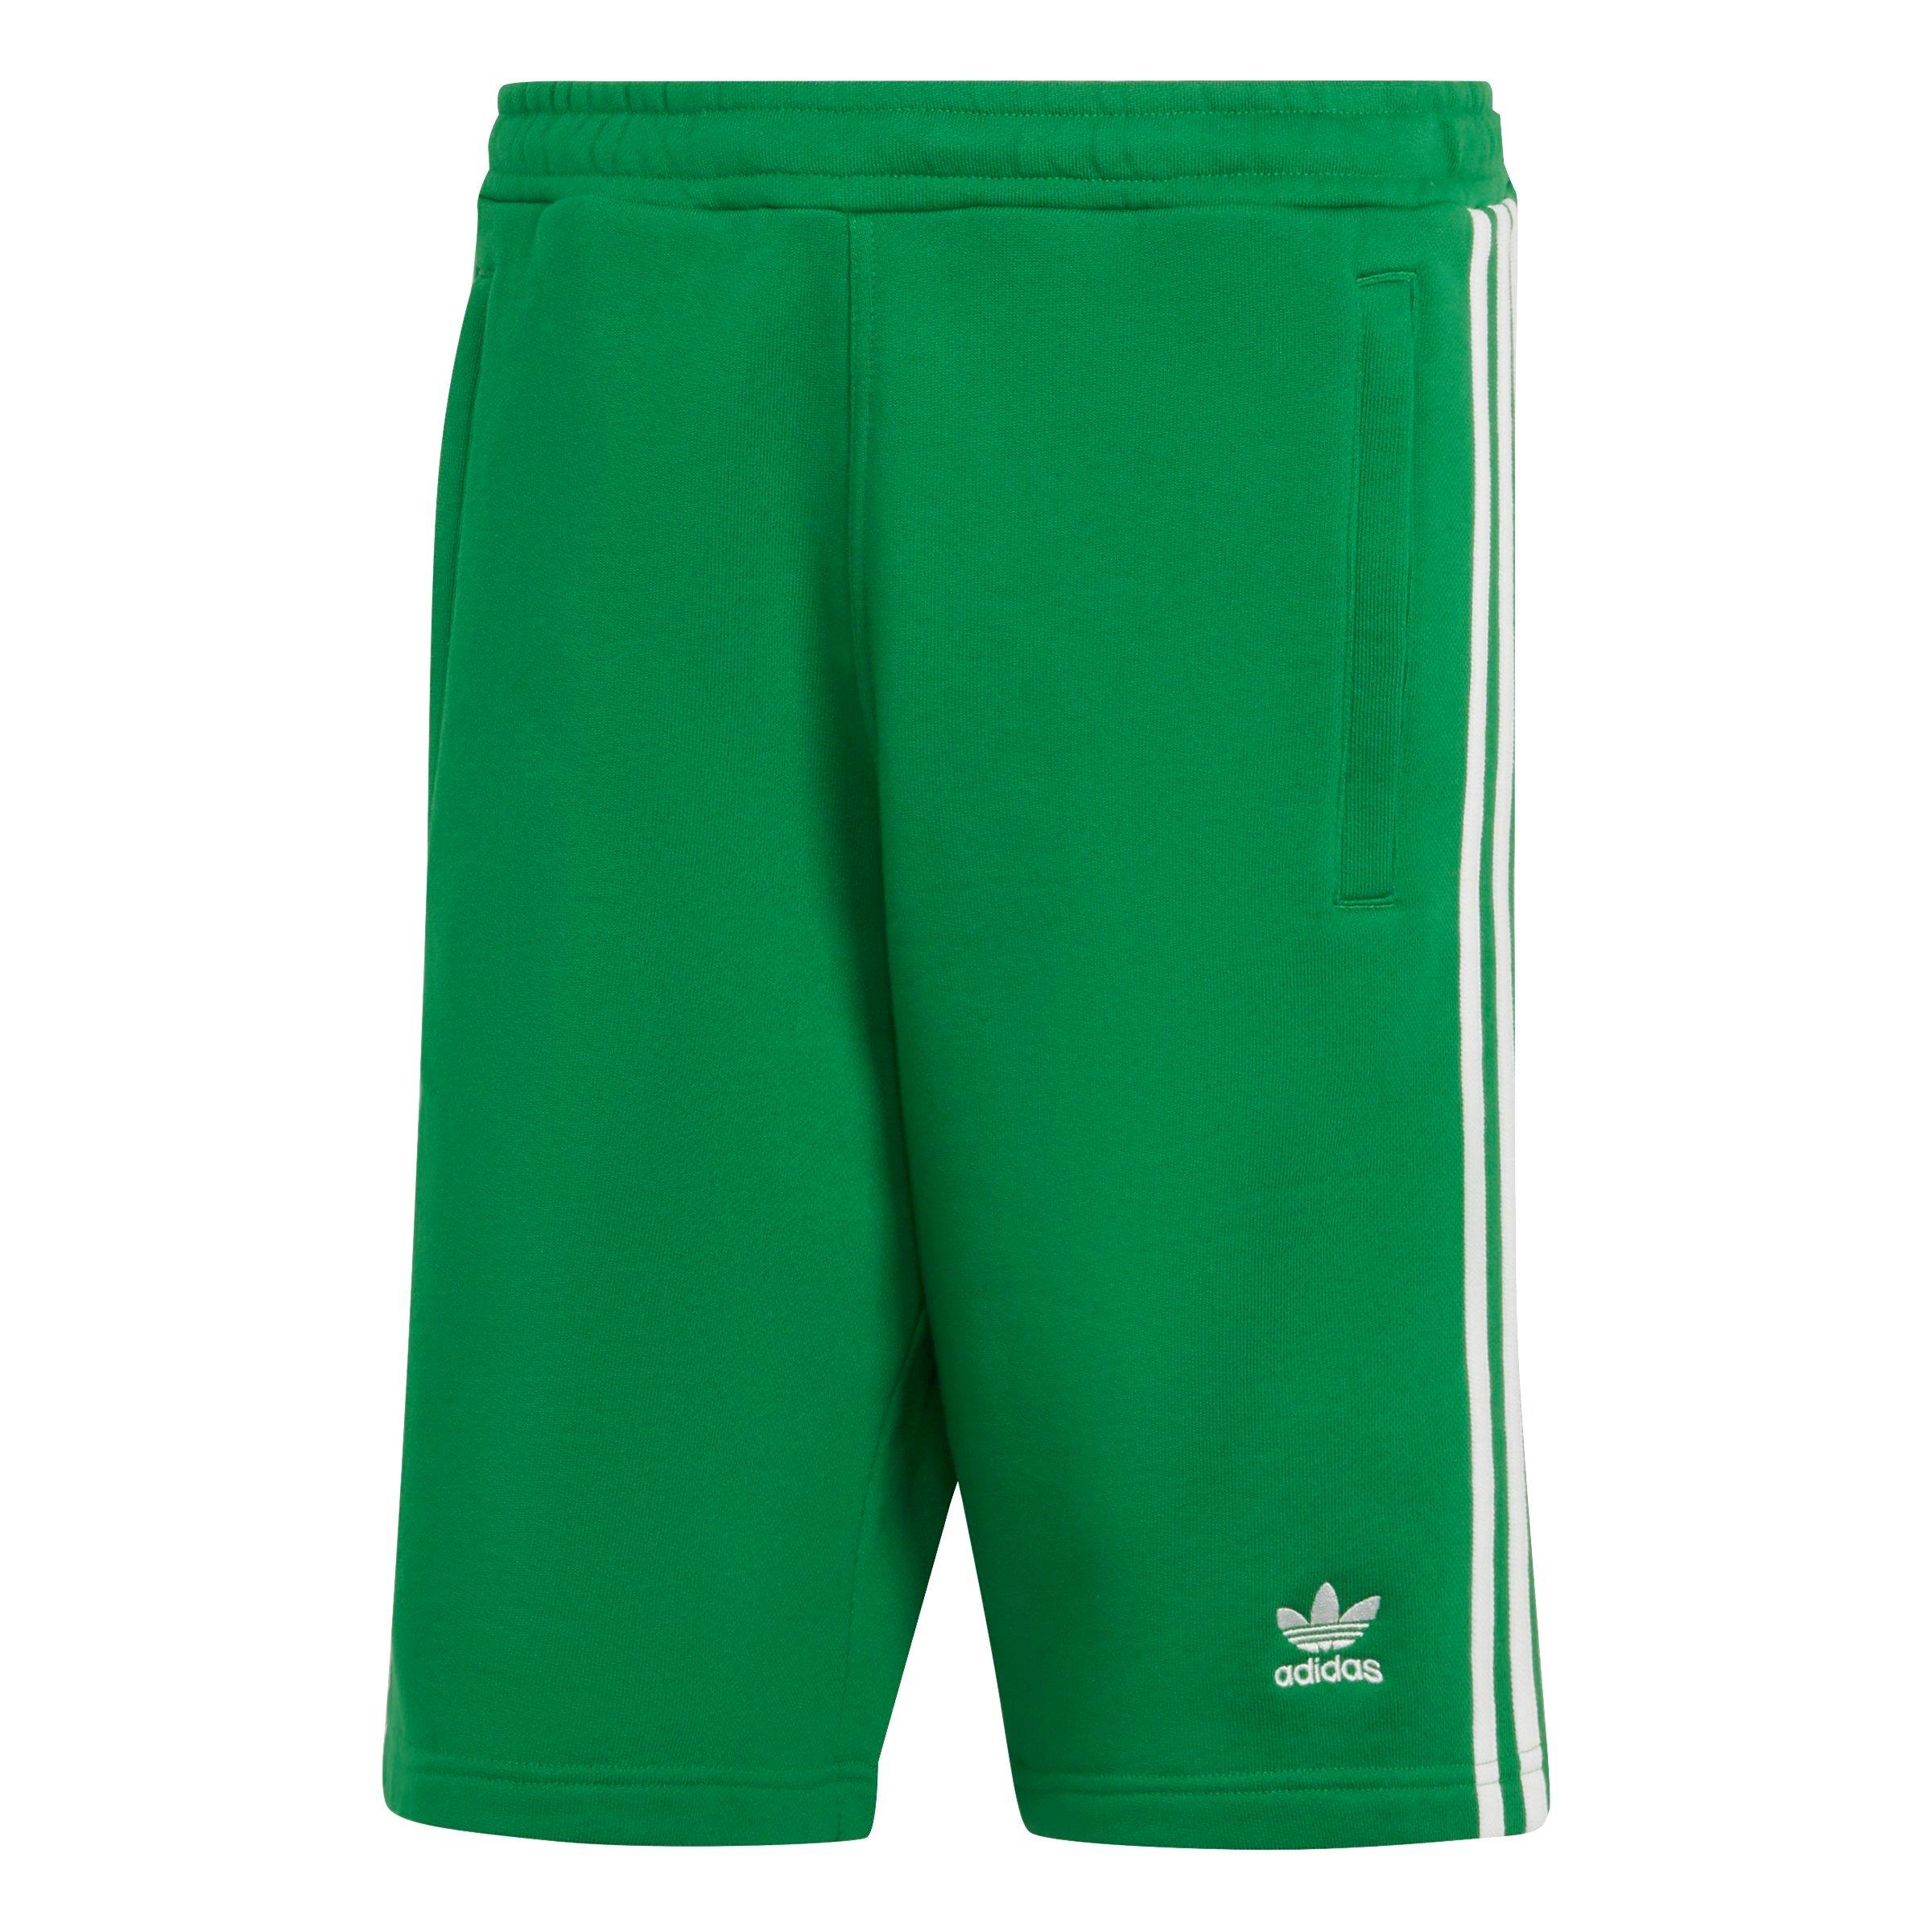 Gear City Hibbett - adidas Men\'s Sweat Shorts-Green | Adicolor 3-Stripes Originals Classics